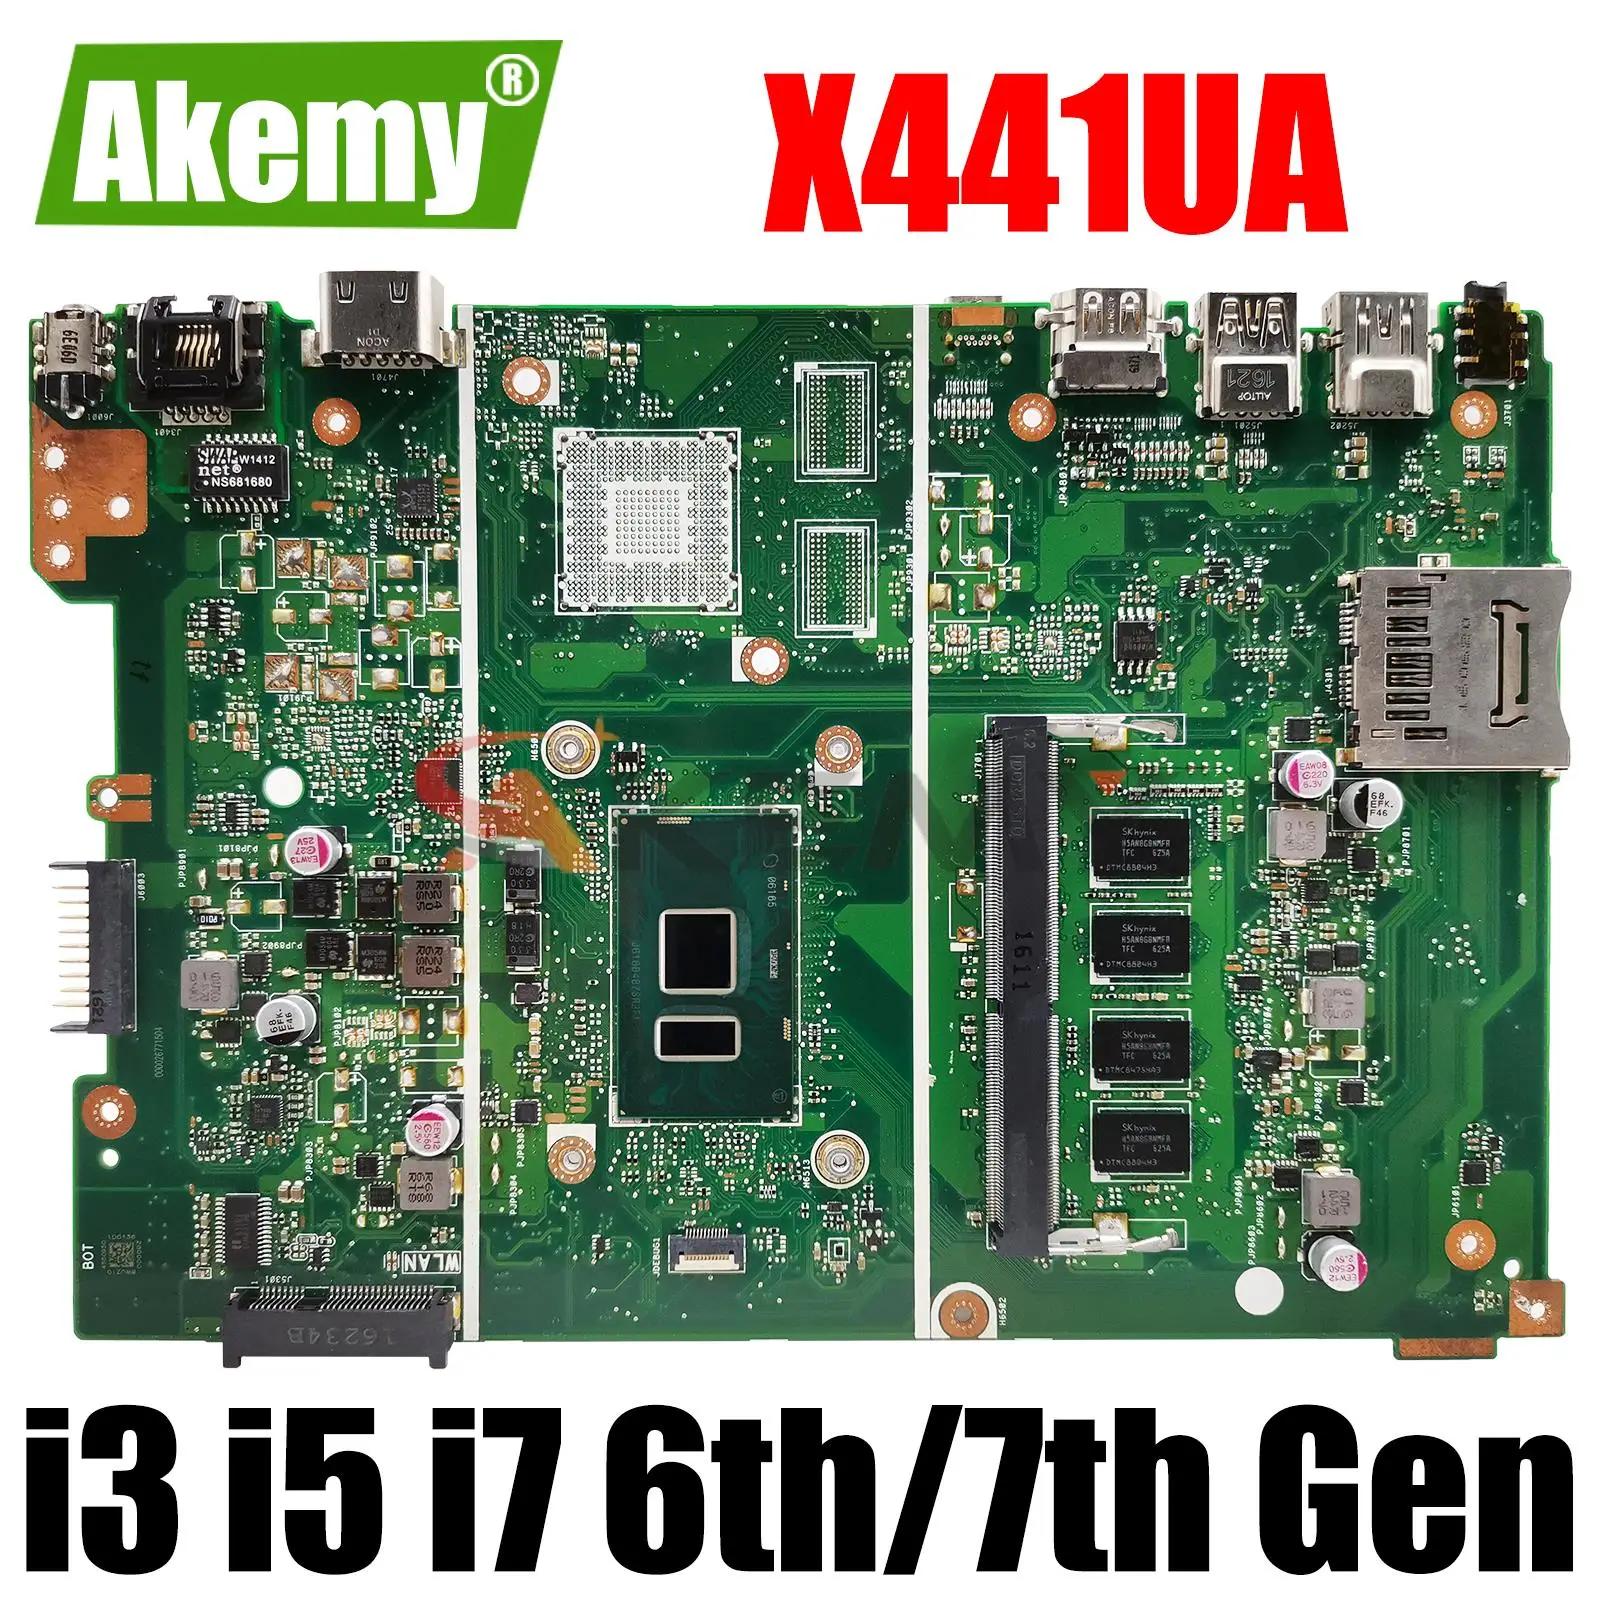 ASUS Ʈ , X441UA, X441UV, F441U, A441U, X441UAR, X441U, X441UB, 4405U, I3, I5, I7, 6 , 7 , 4GB, 8GB RAM